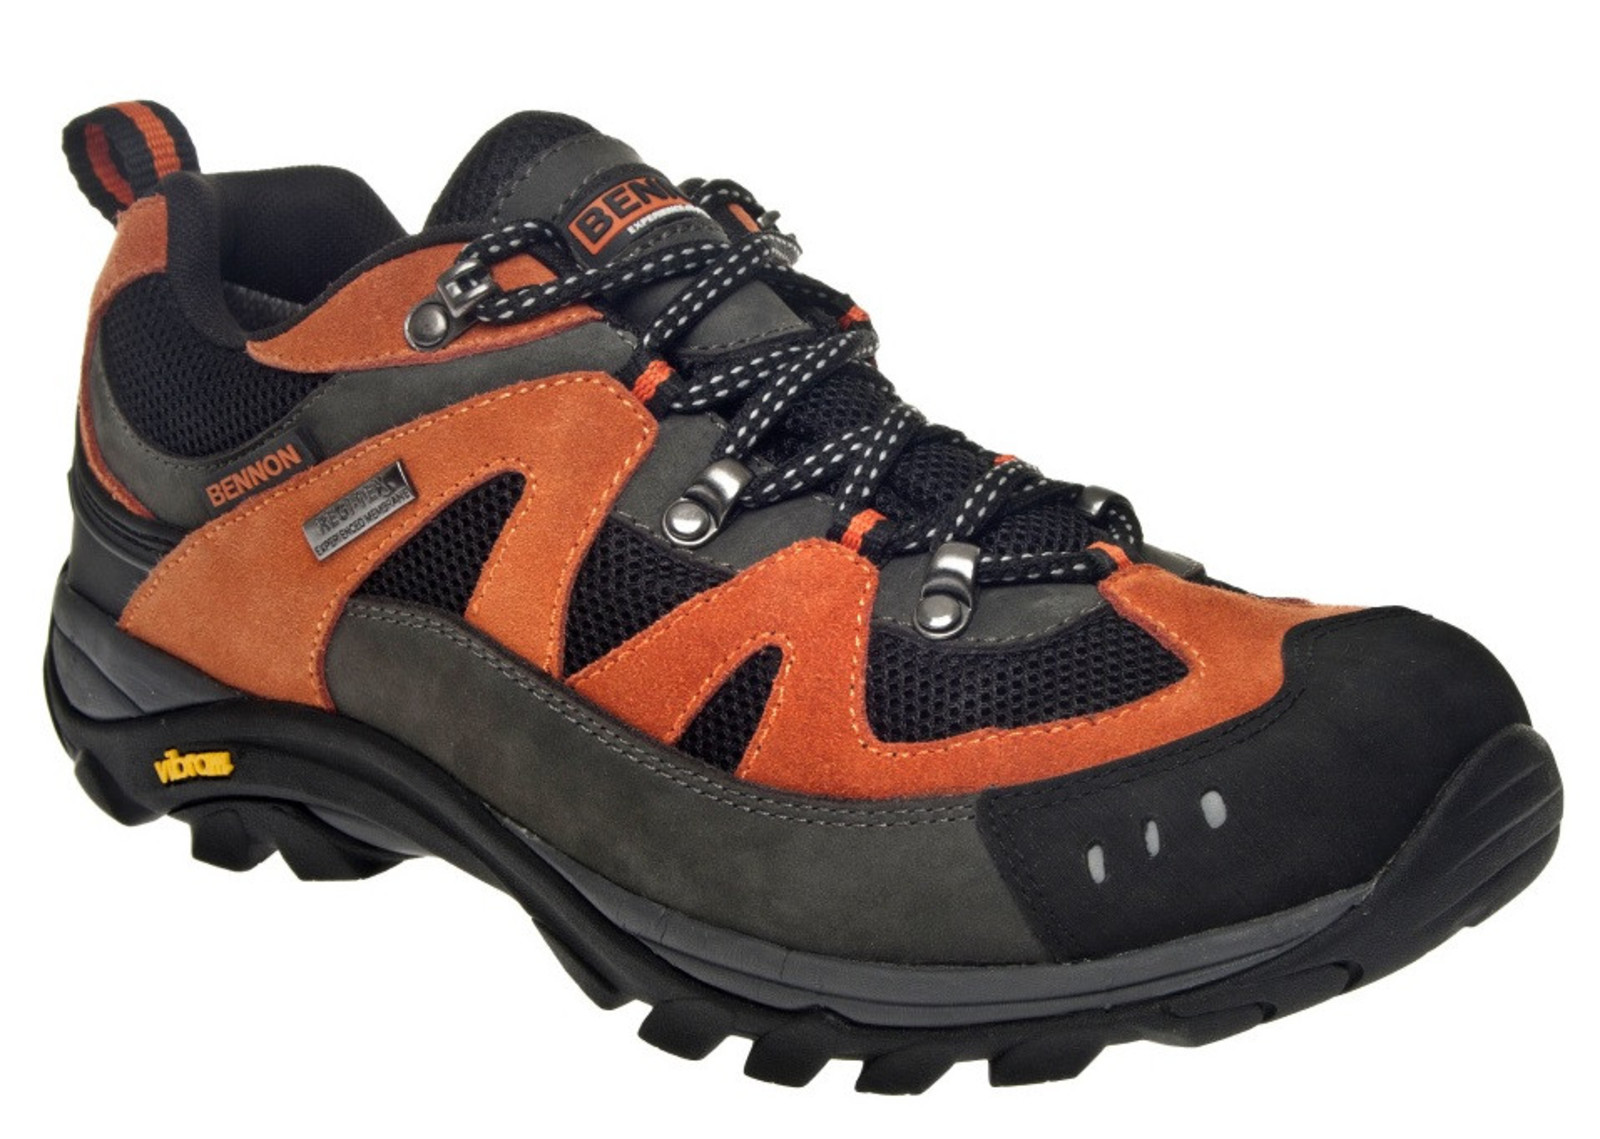 Outdoorové topánky Bennon Emperado s membránou - veľkosť: 42, farba: sivá/oranžová